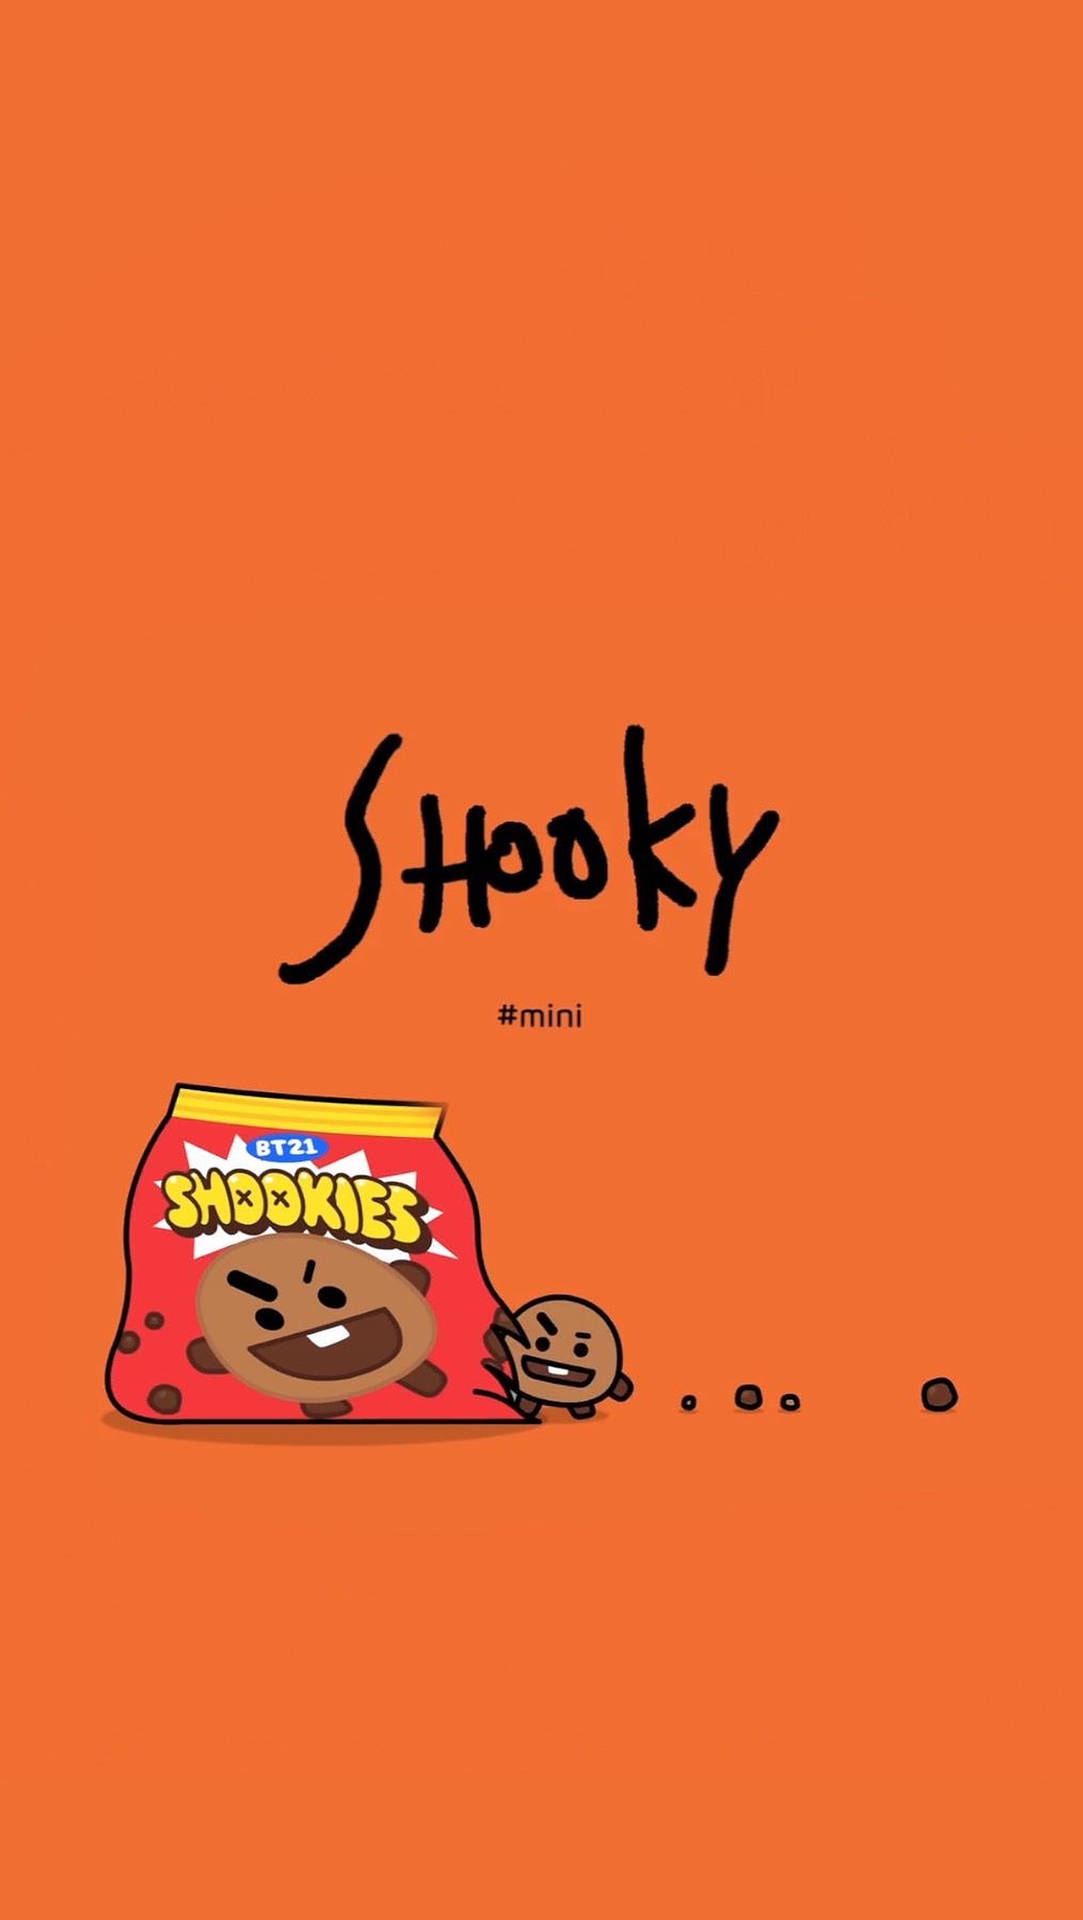 Shooky Bt21 Shookies